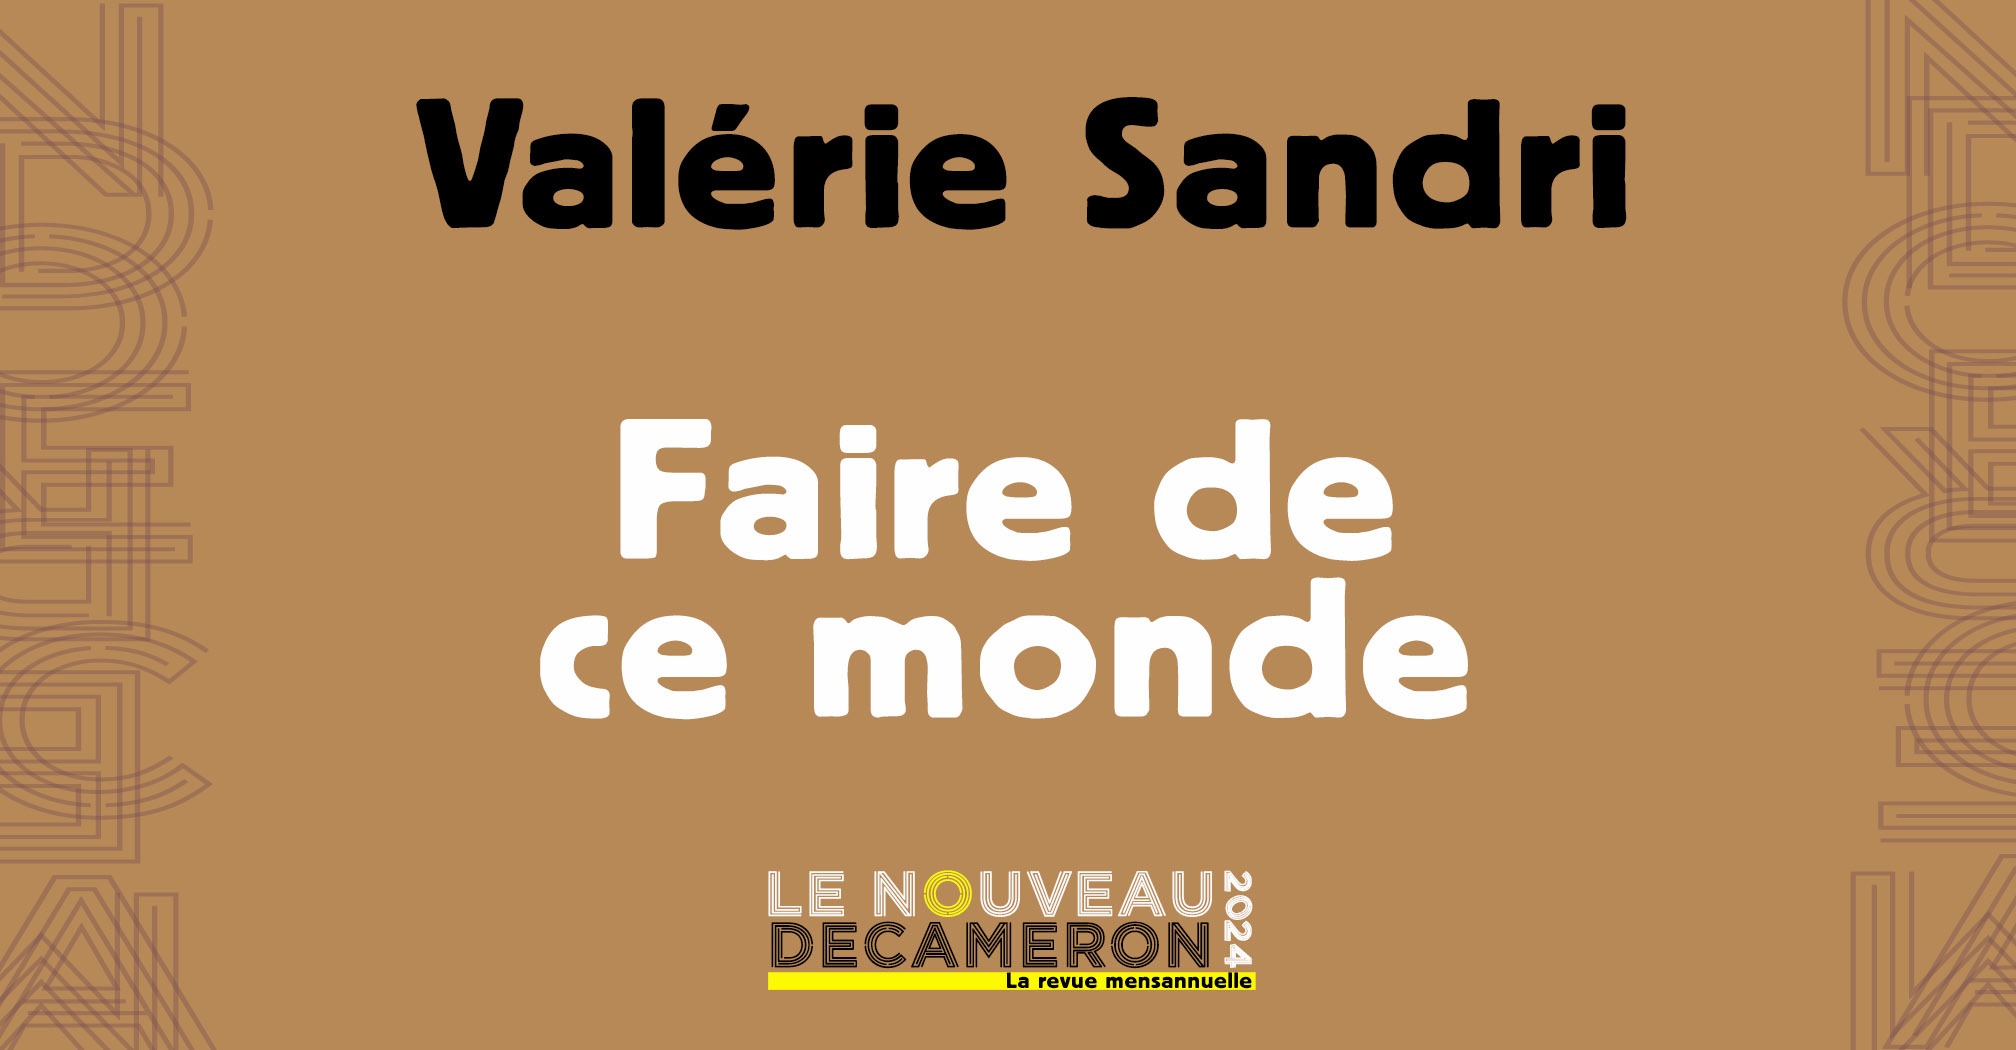 Valérie Sandri - Faire de ce monde